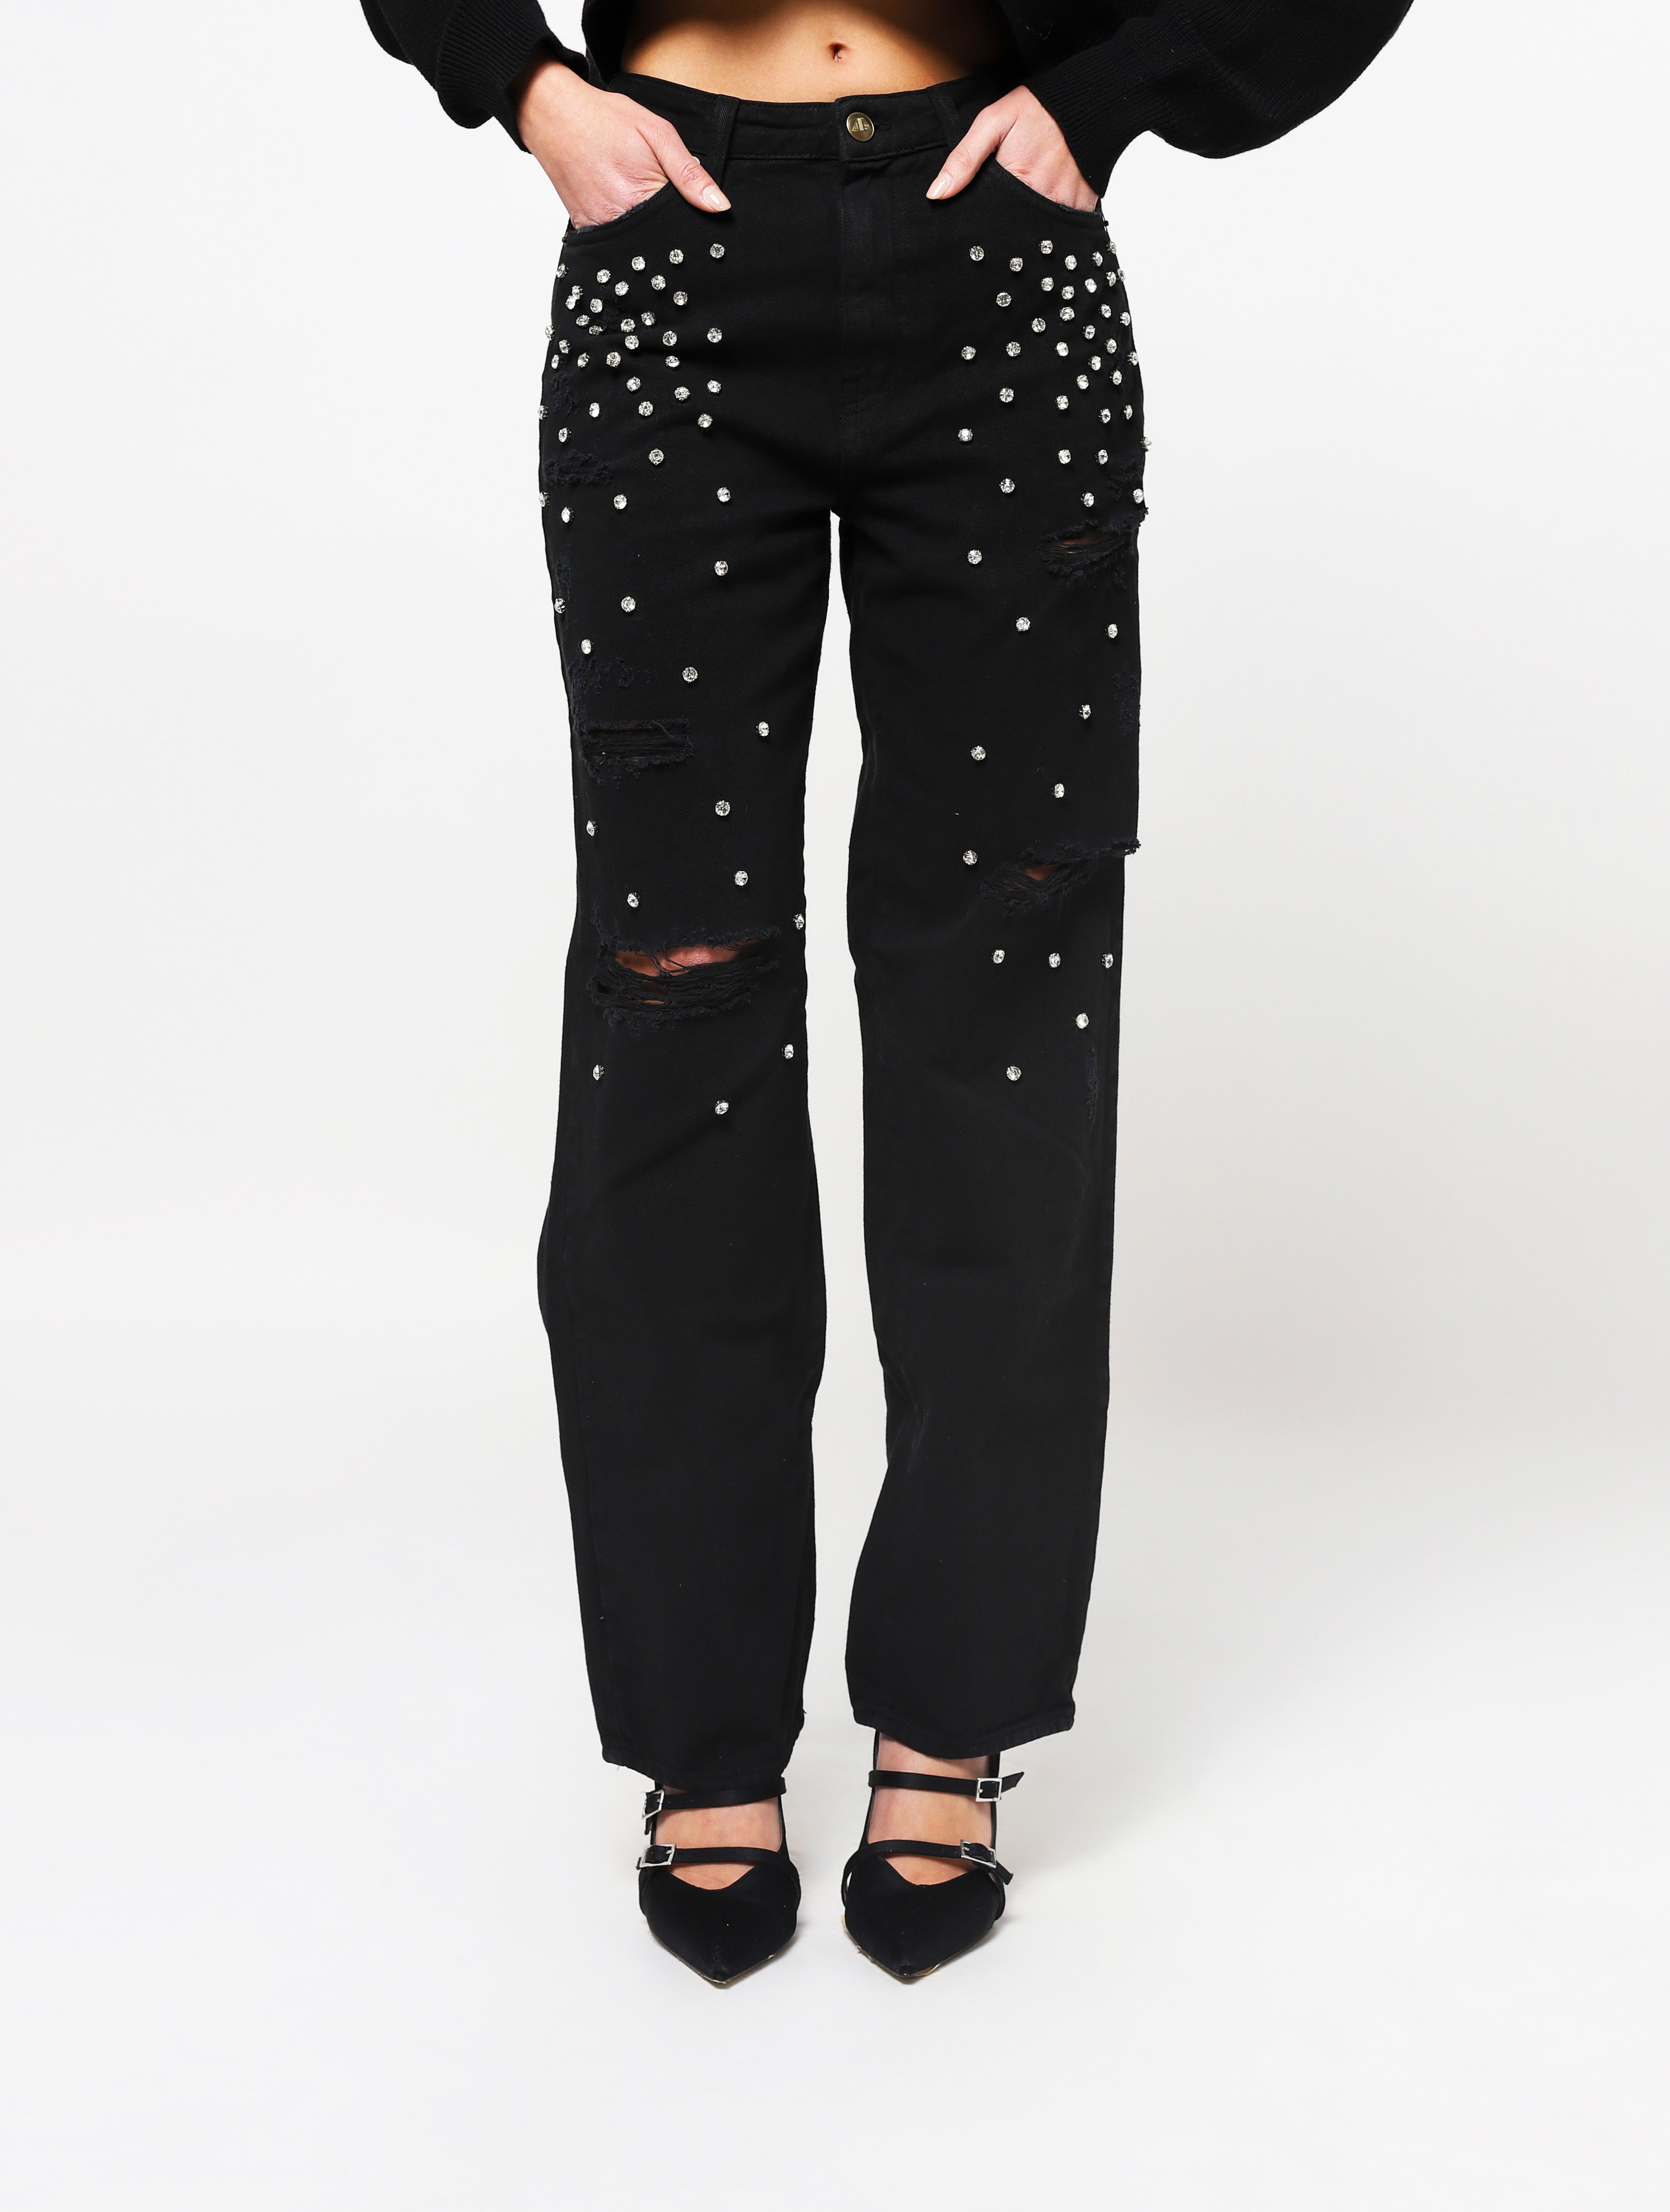 Jeans con 5 tasche, gioielli applicati e lacerazioni sulla parte frontale del pantalone, patch applicata posteriore piccola con nome del brand - nero woman  - 3